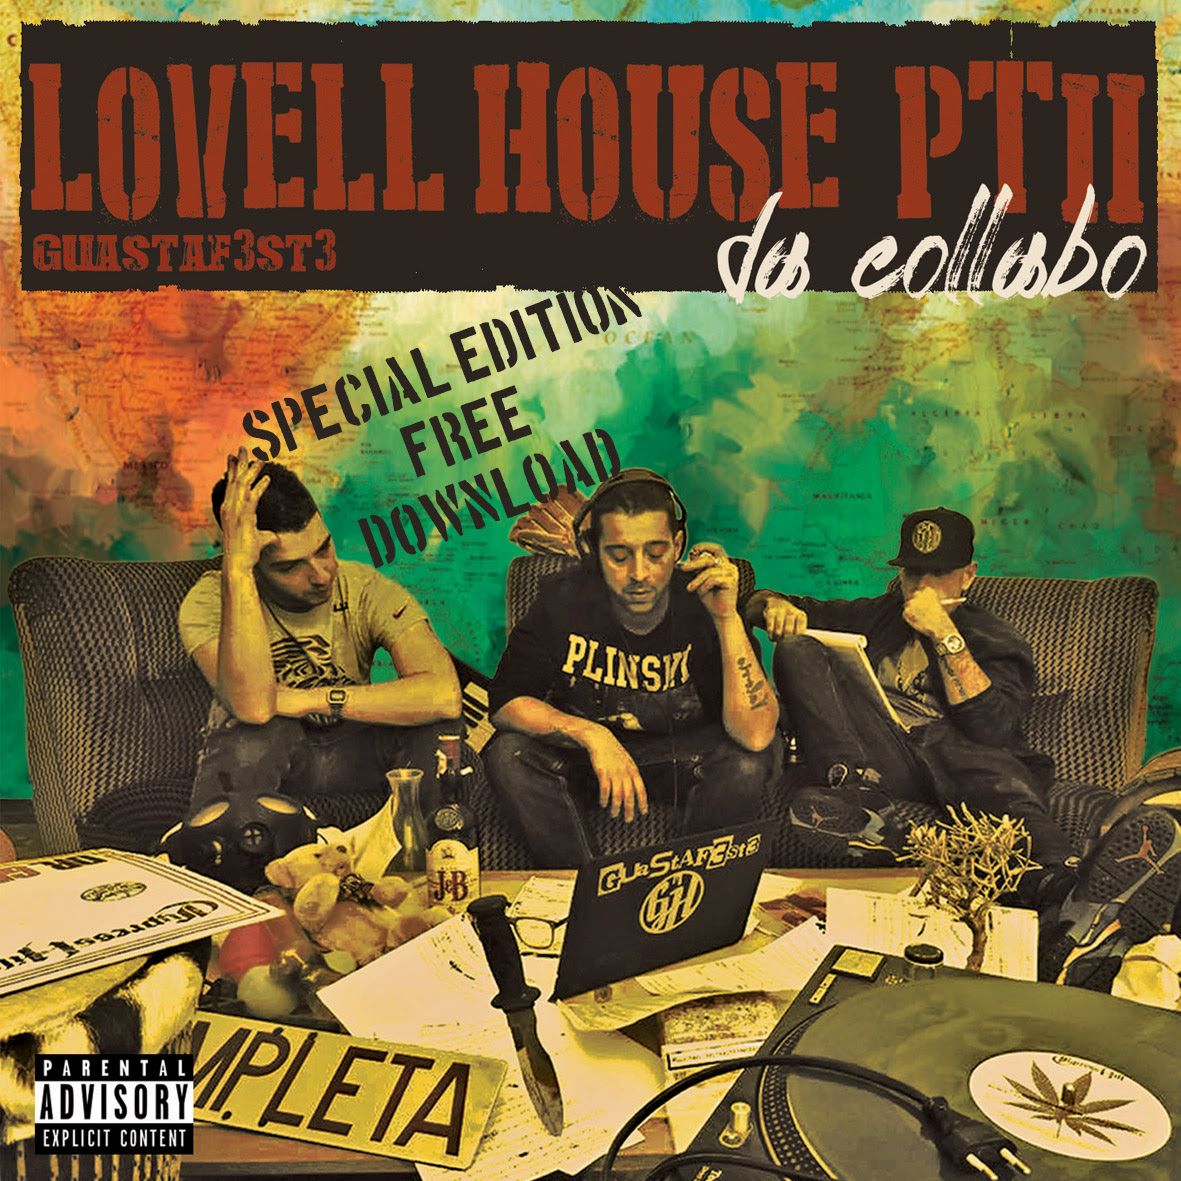 I Guastaf3st3 regalano tredici tracce di “Lovell house pt.II – Da collabo”